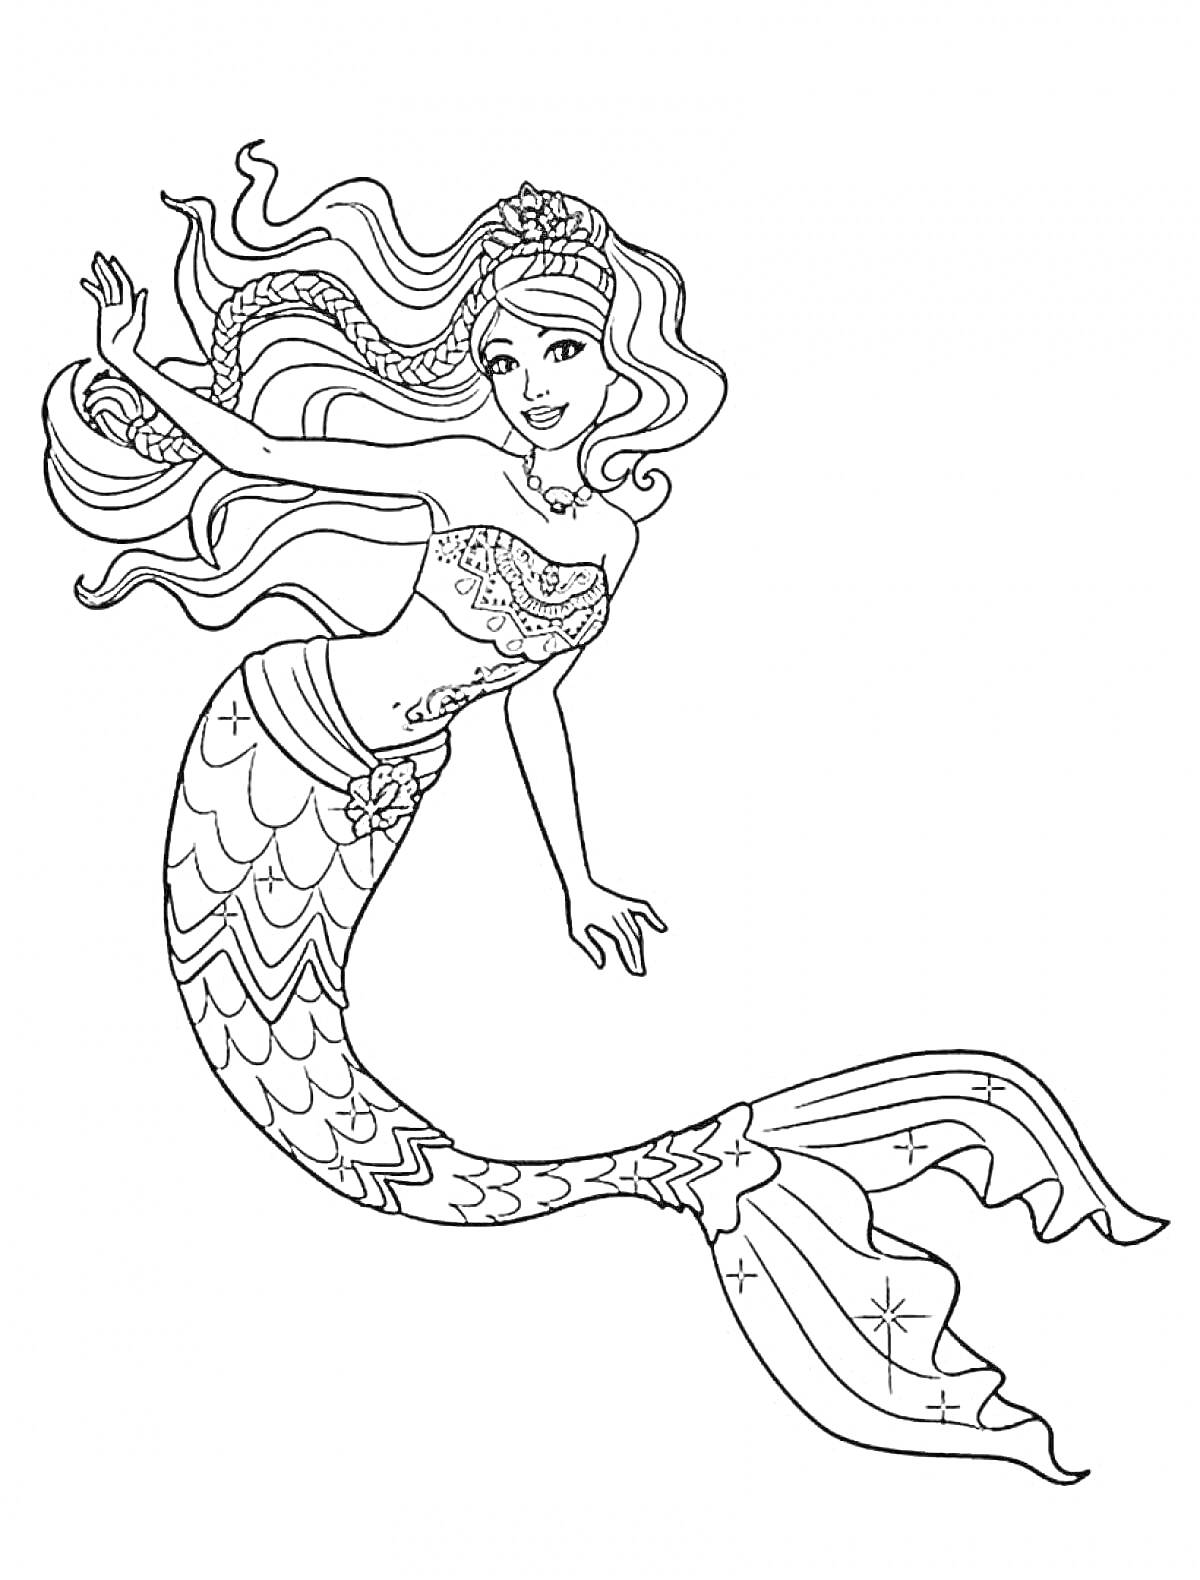 Барби русалка с длинными волнистыми волосами, украшенными цветами, в топе с декоративными элементами и рыбьим хвостом с узорами и звездами